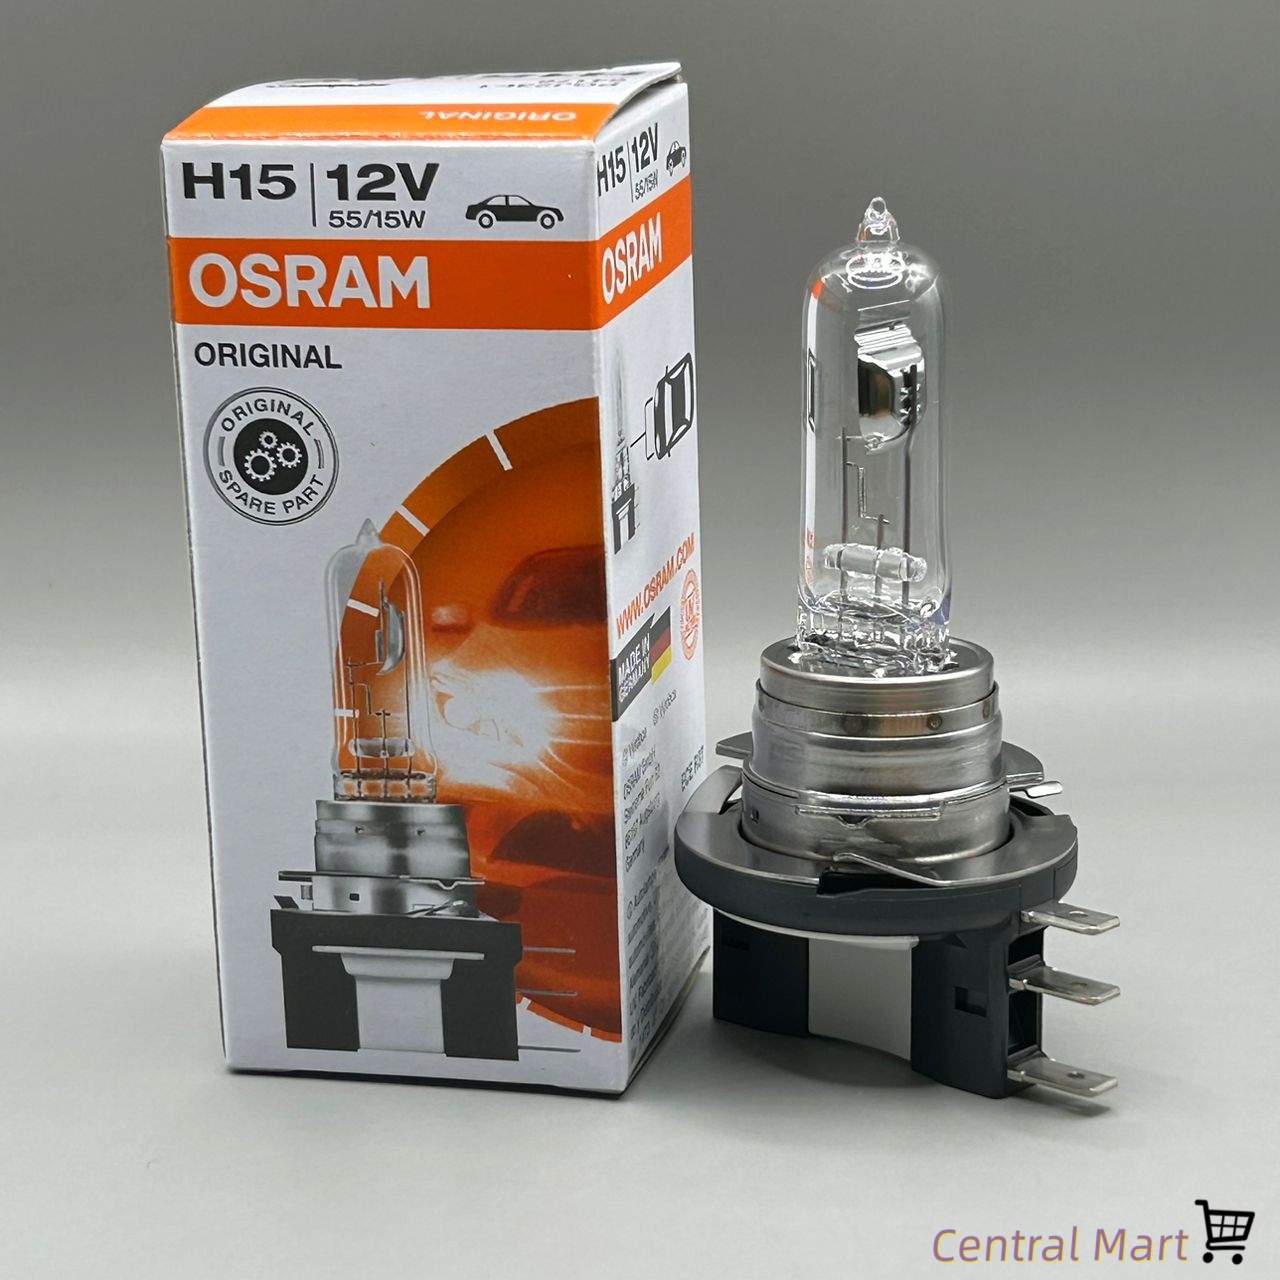 Original Osram H15 12V 55/15W - Halogen Bulb for Ford Ranger, VW